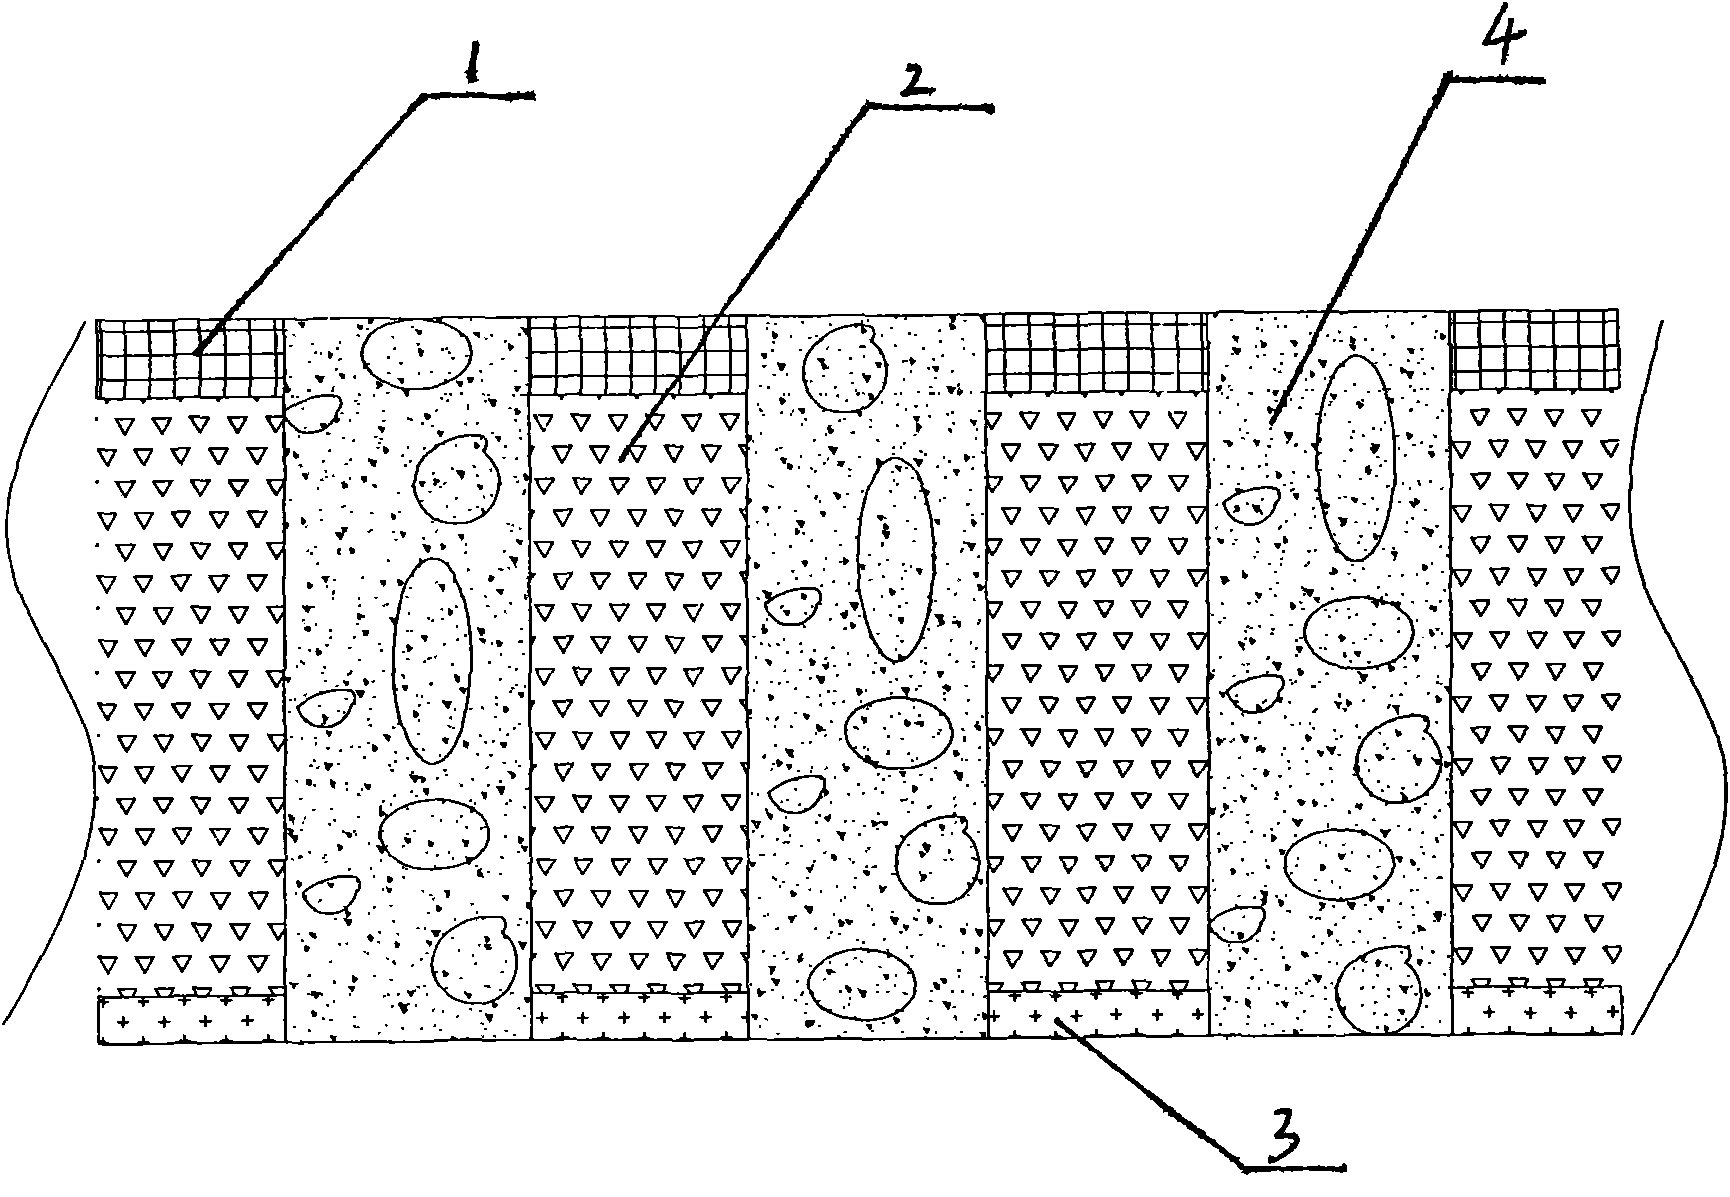 Plant net structure